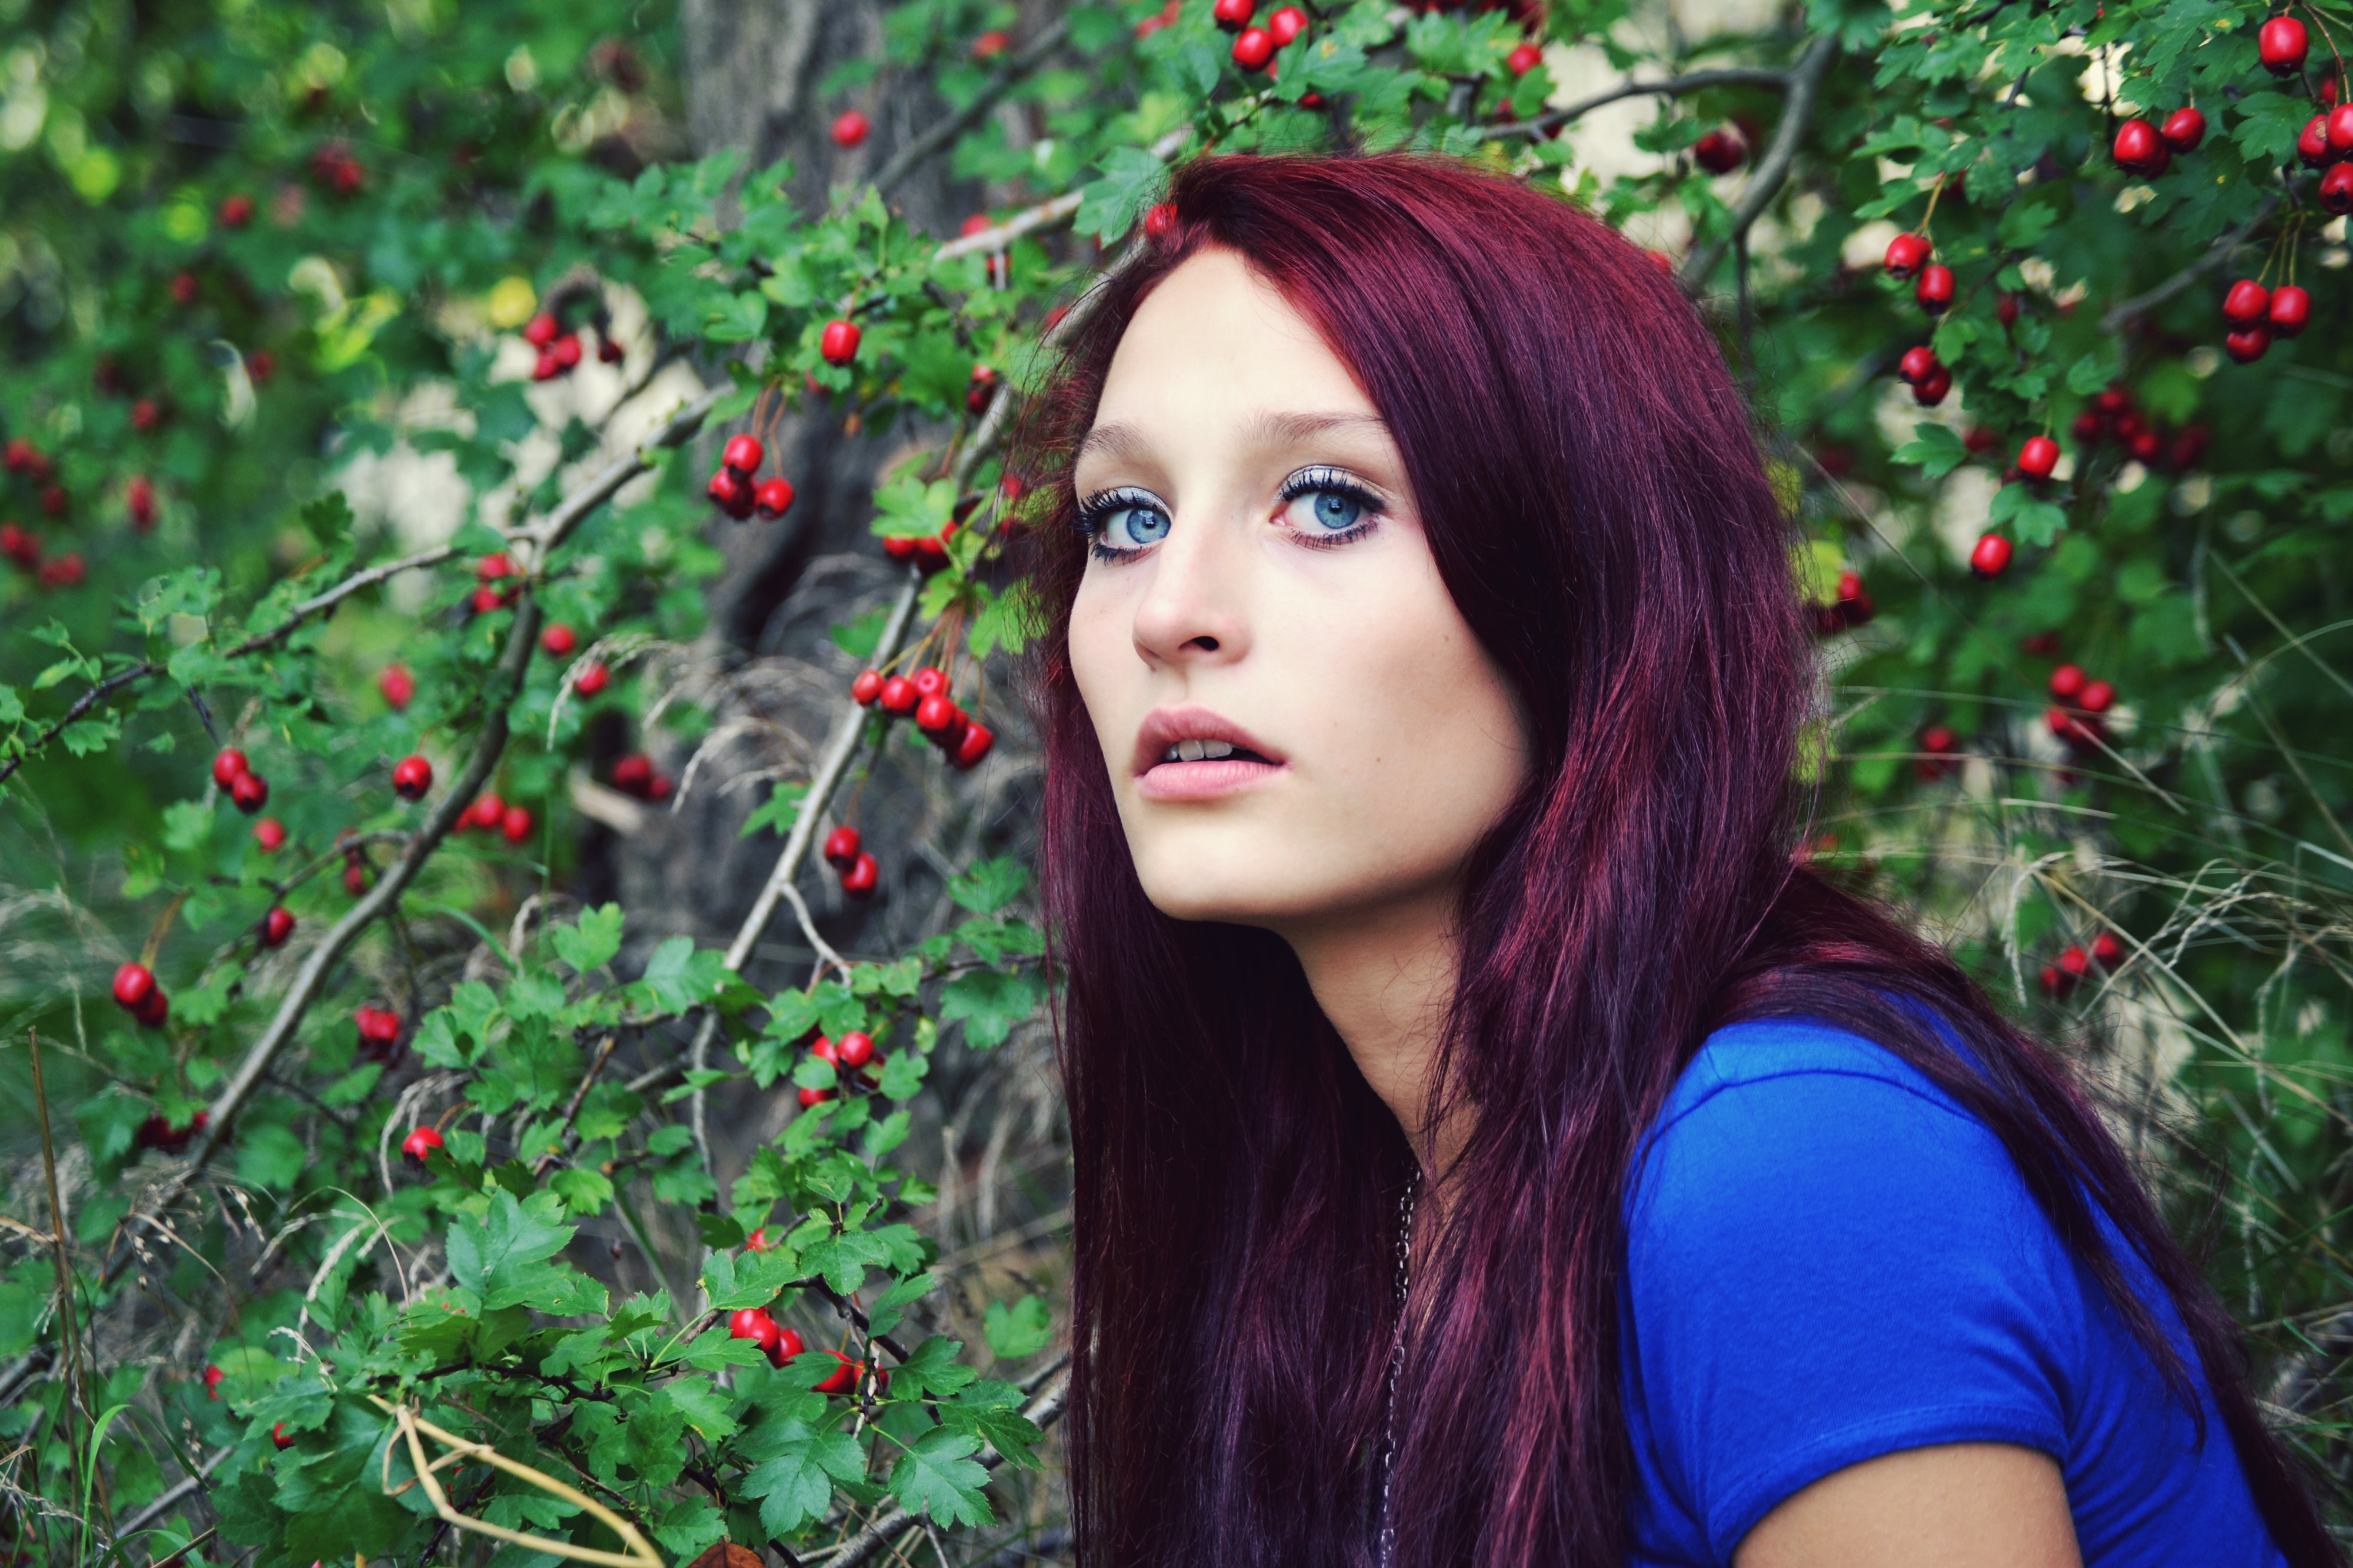 Глазами ягодка. Девушки. Девушка с красными глазами. Красное дерево цвет волос с голубыми глазами. Красивые фотосессии девушек с ягодами в волосах.